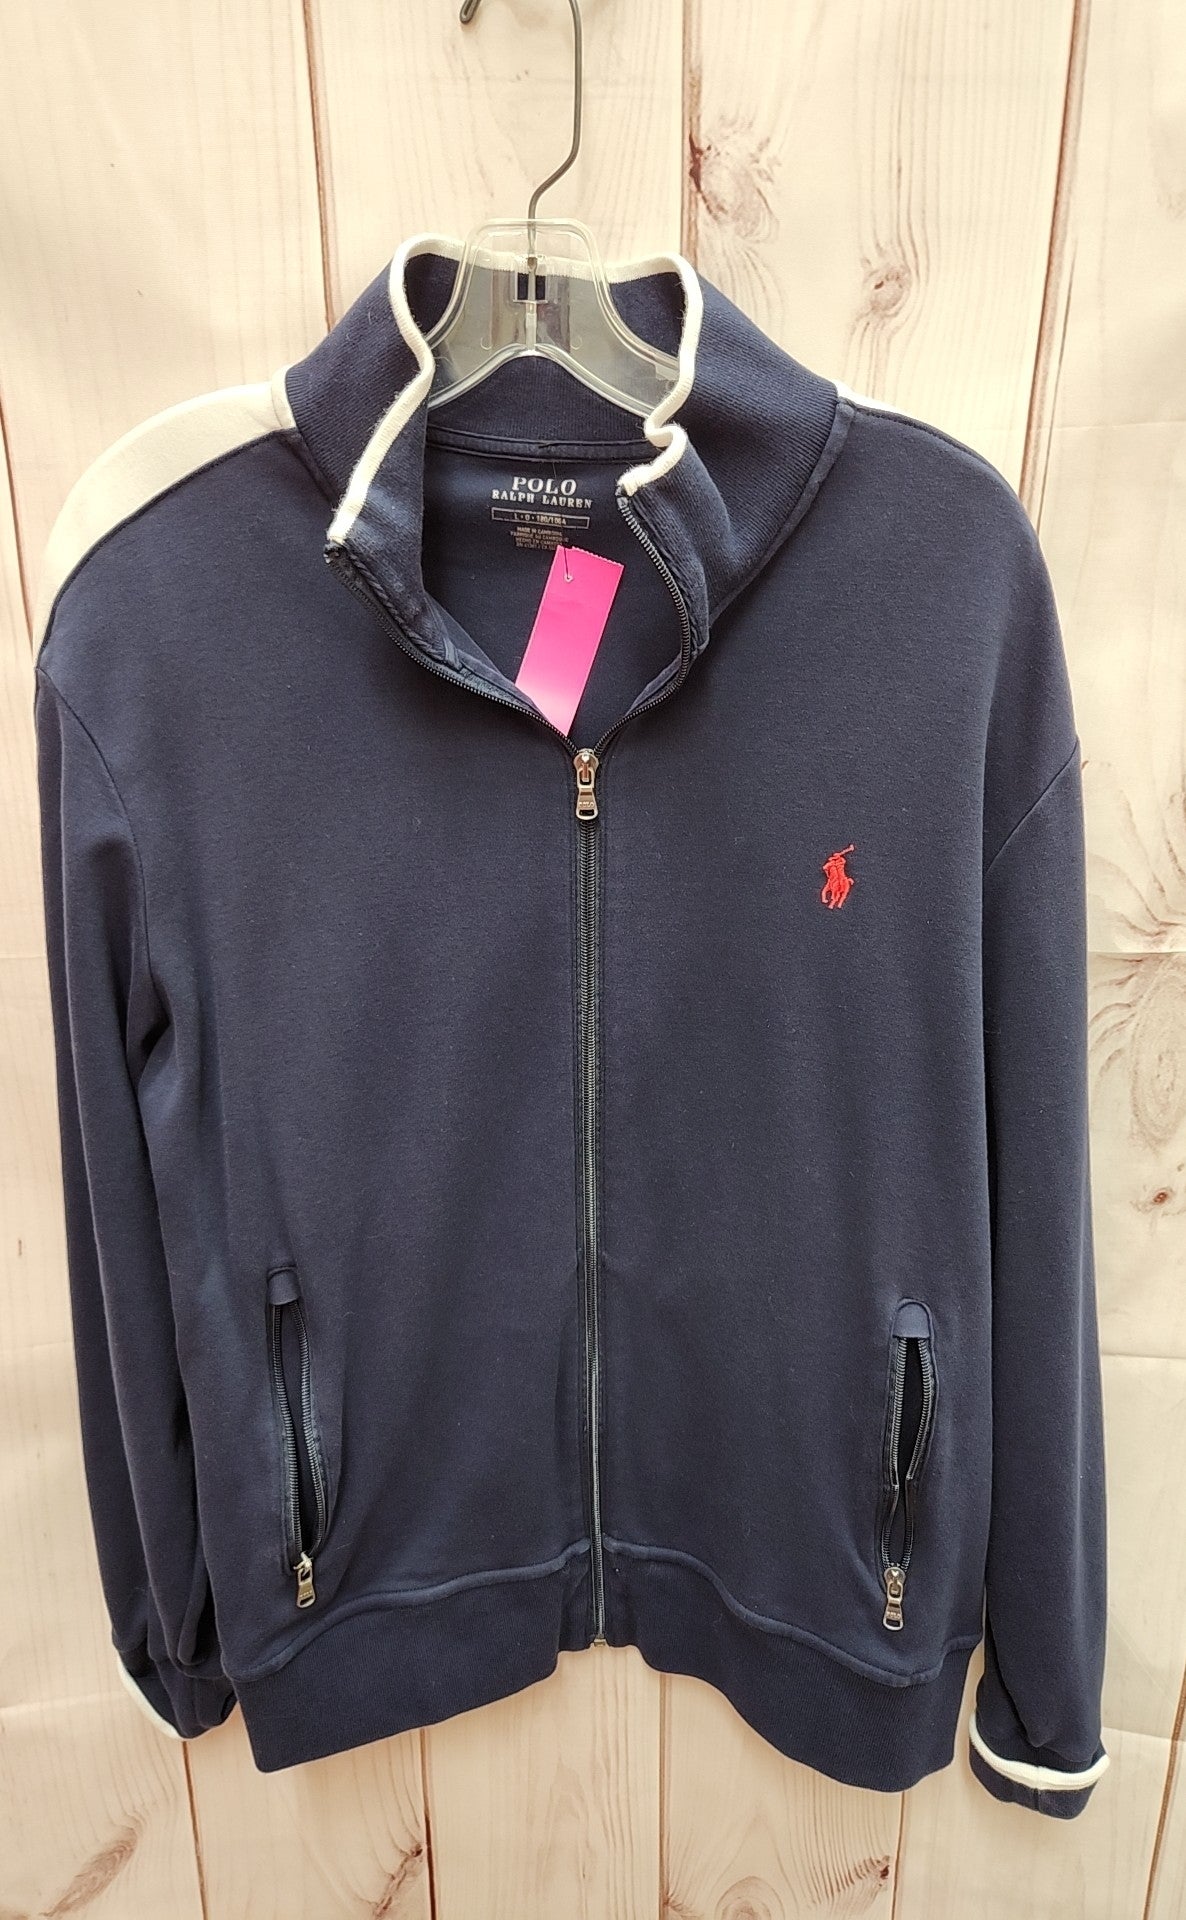 Polo by Ralph Lauren Men's Size L Navy Sweatshirt Zip Jacket w/Zip Pockets